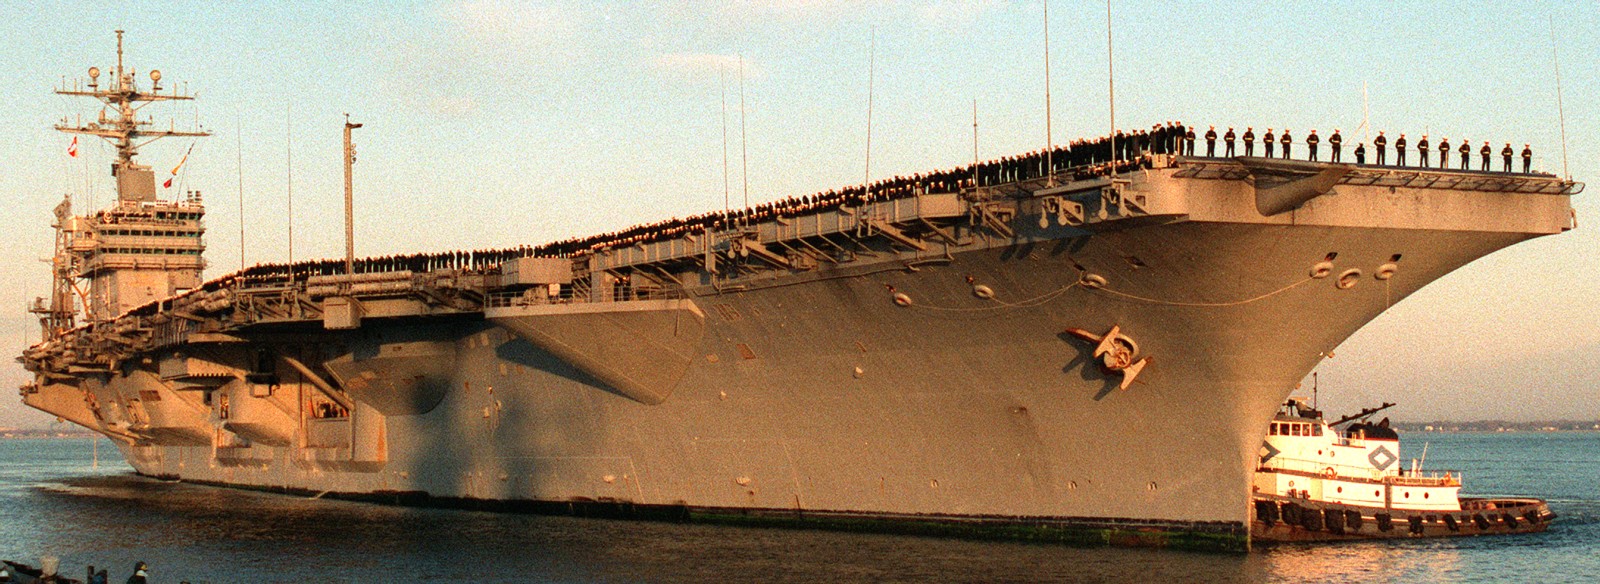 cvn-69 uss dwight d. eisenhower aircraft carrier us navy 281